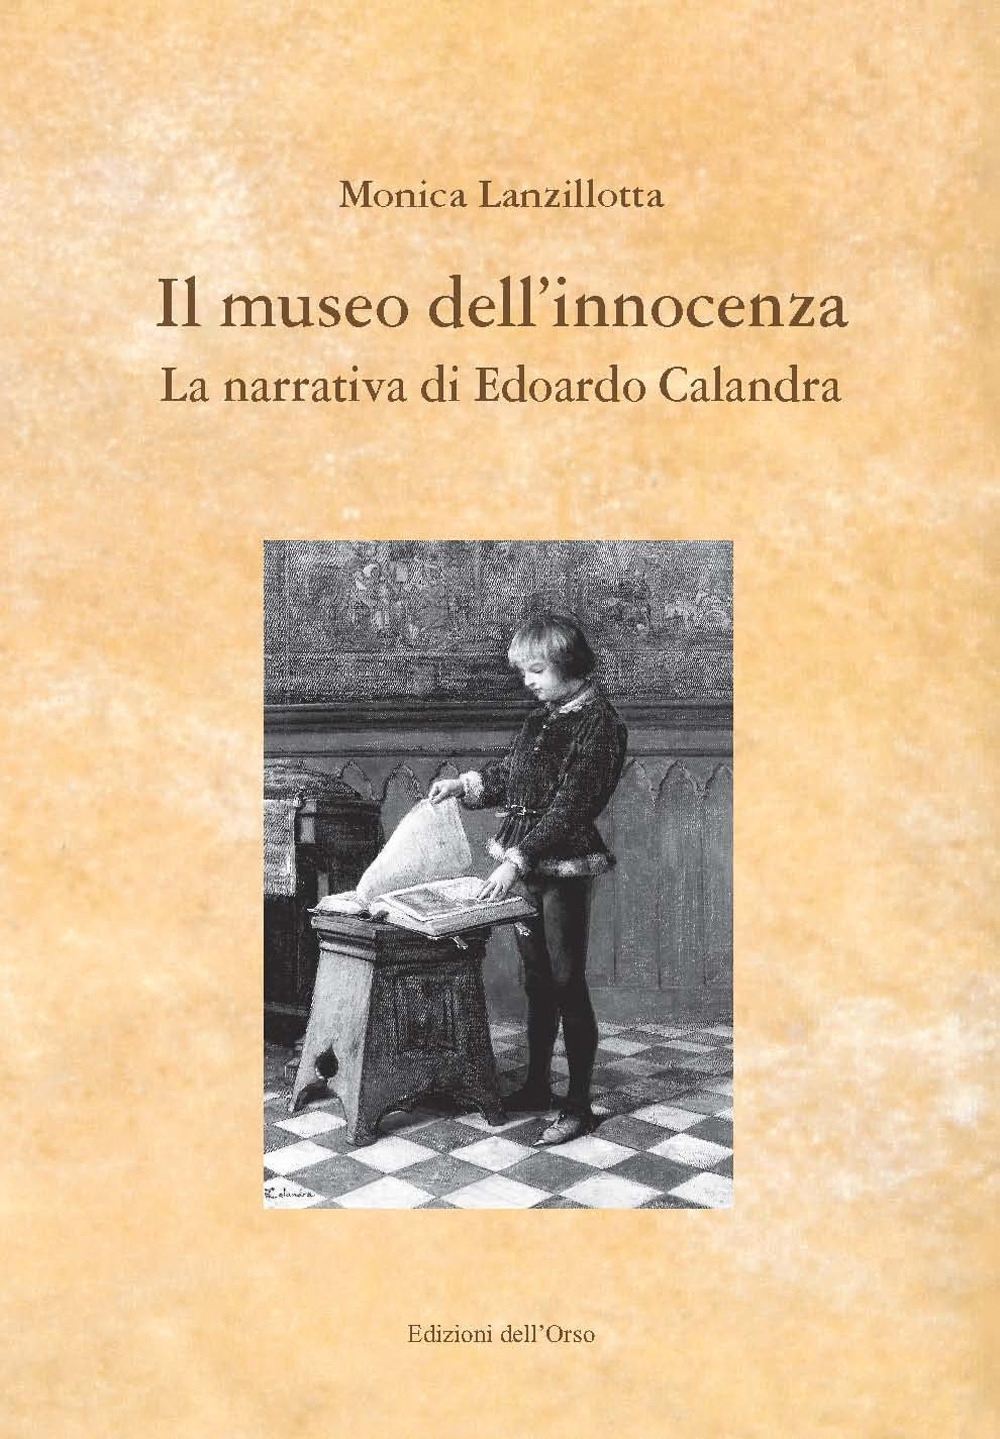 Image of Il museo dell'innocenza. La narrativa di Edoardo Calandra